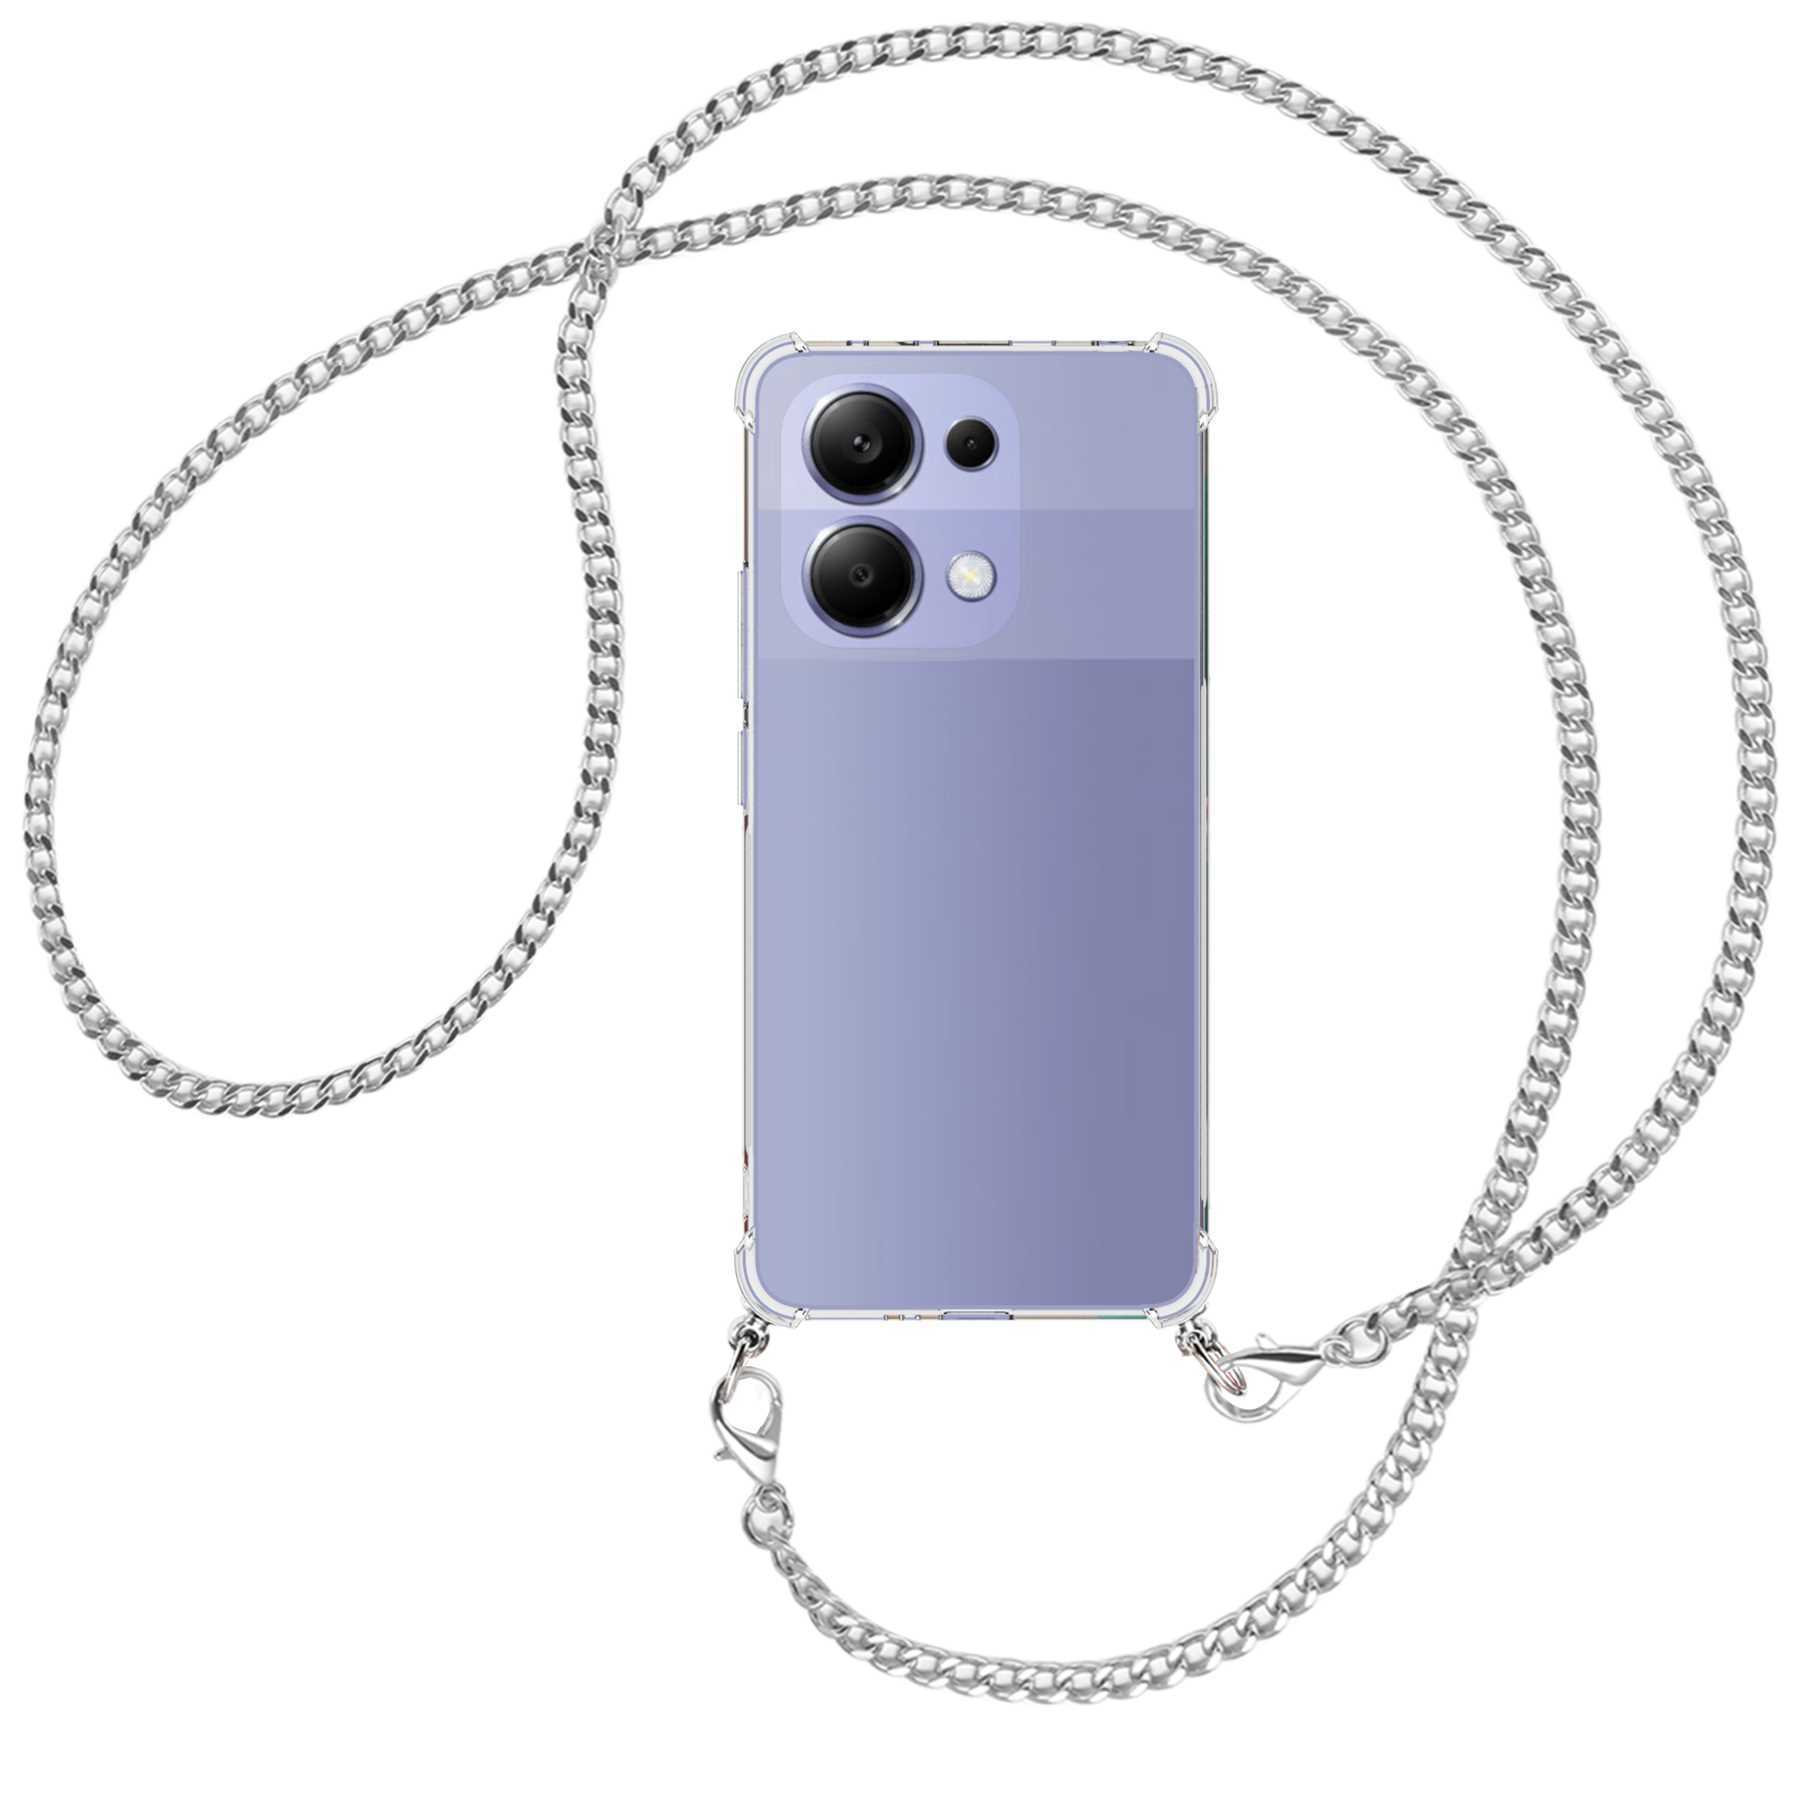 MTB MORE ENERGY Umhänge-Hülle Redmi Metallkette, Umhängetasche, Xiaomi, 4G, Note (silber) mit 13 Kette